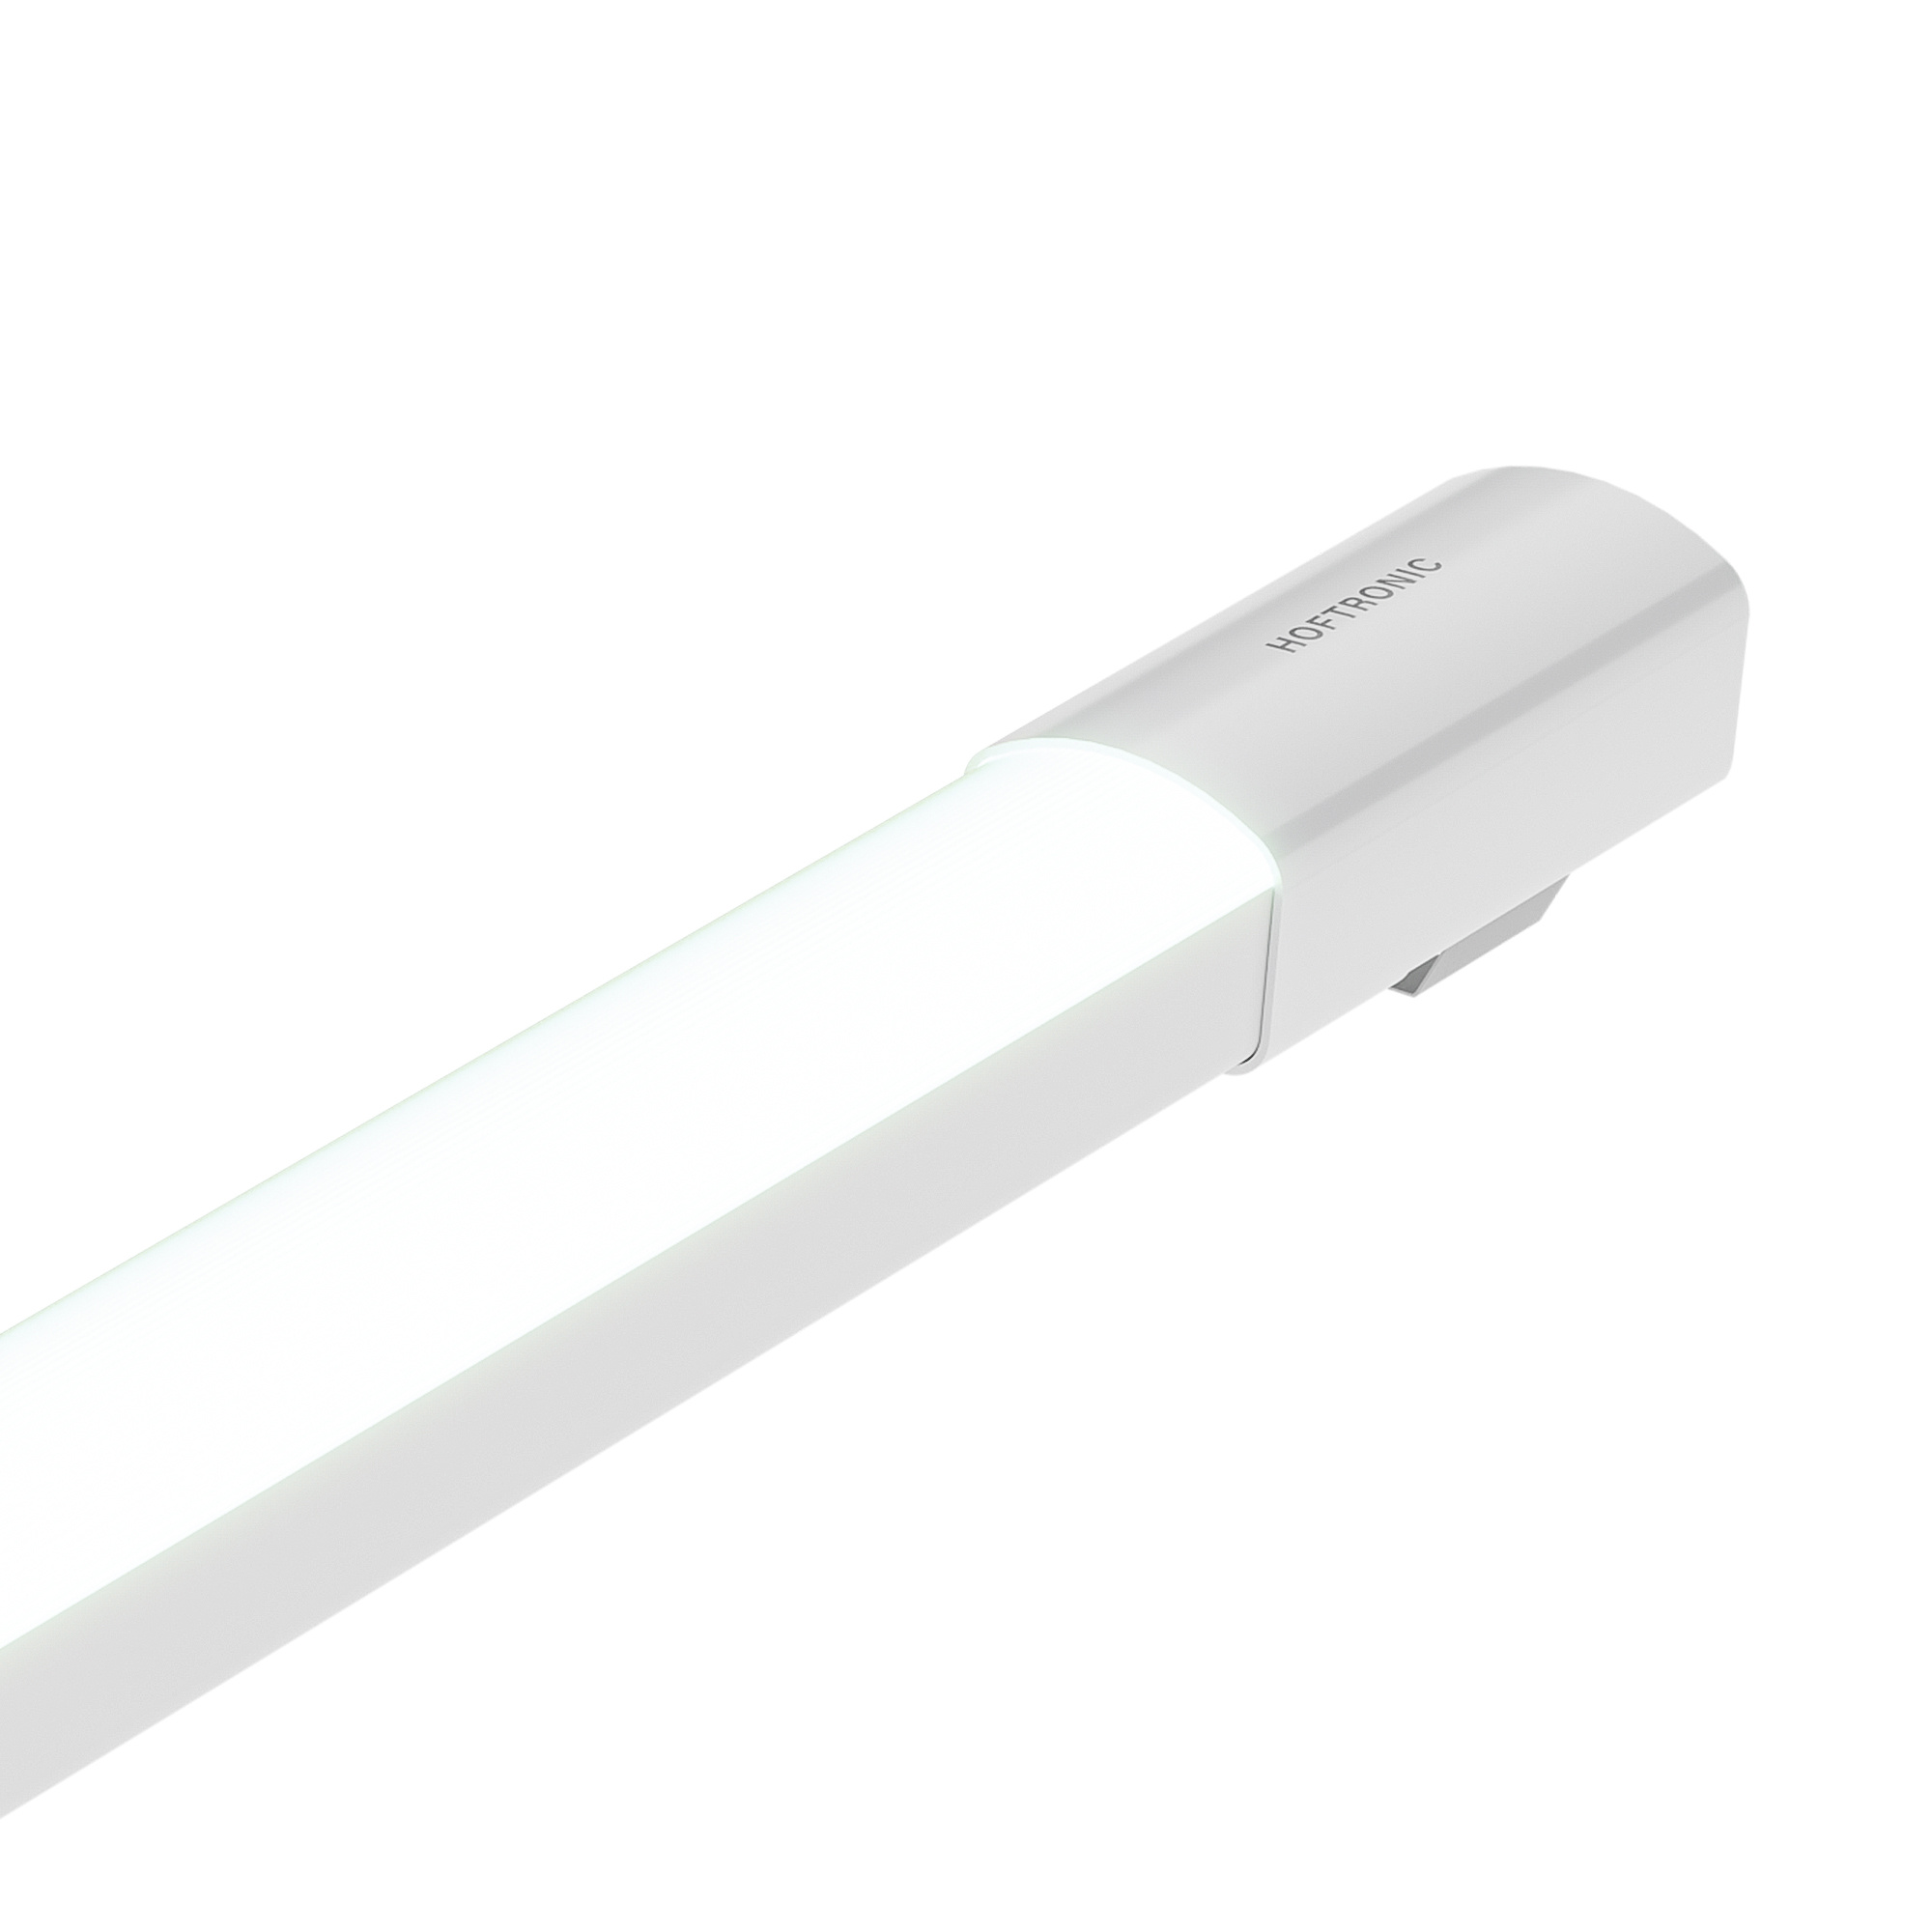 HOFTRONIC™ LED TL Armatuur 60 cm - R-Serie Tri-Proof - IP65 waterdicht - 18 Watt - 1800 Lumen - 100 lumen/watt - 6500K daglicht wit licht - Flikkervrij - Compleet